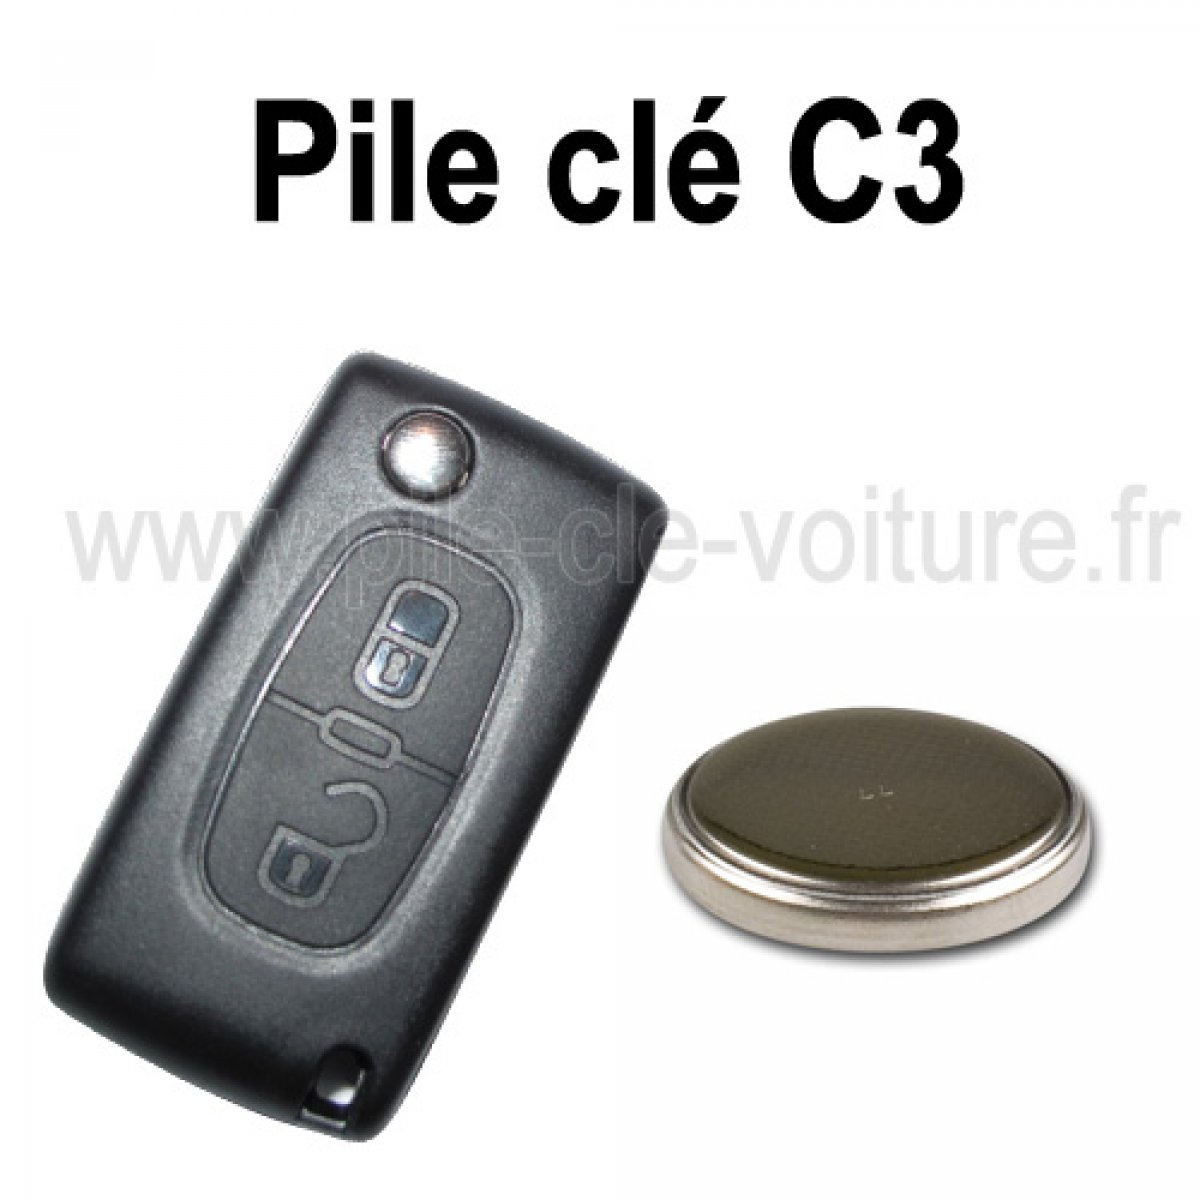 Pile CR1632 Pile clé de voiture : Renault, Citroen, Peugeot